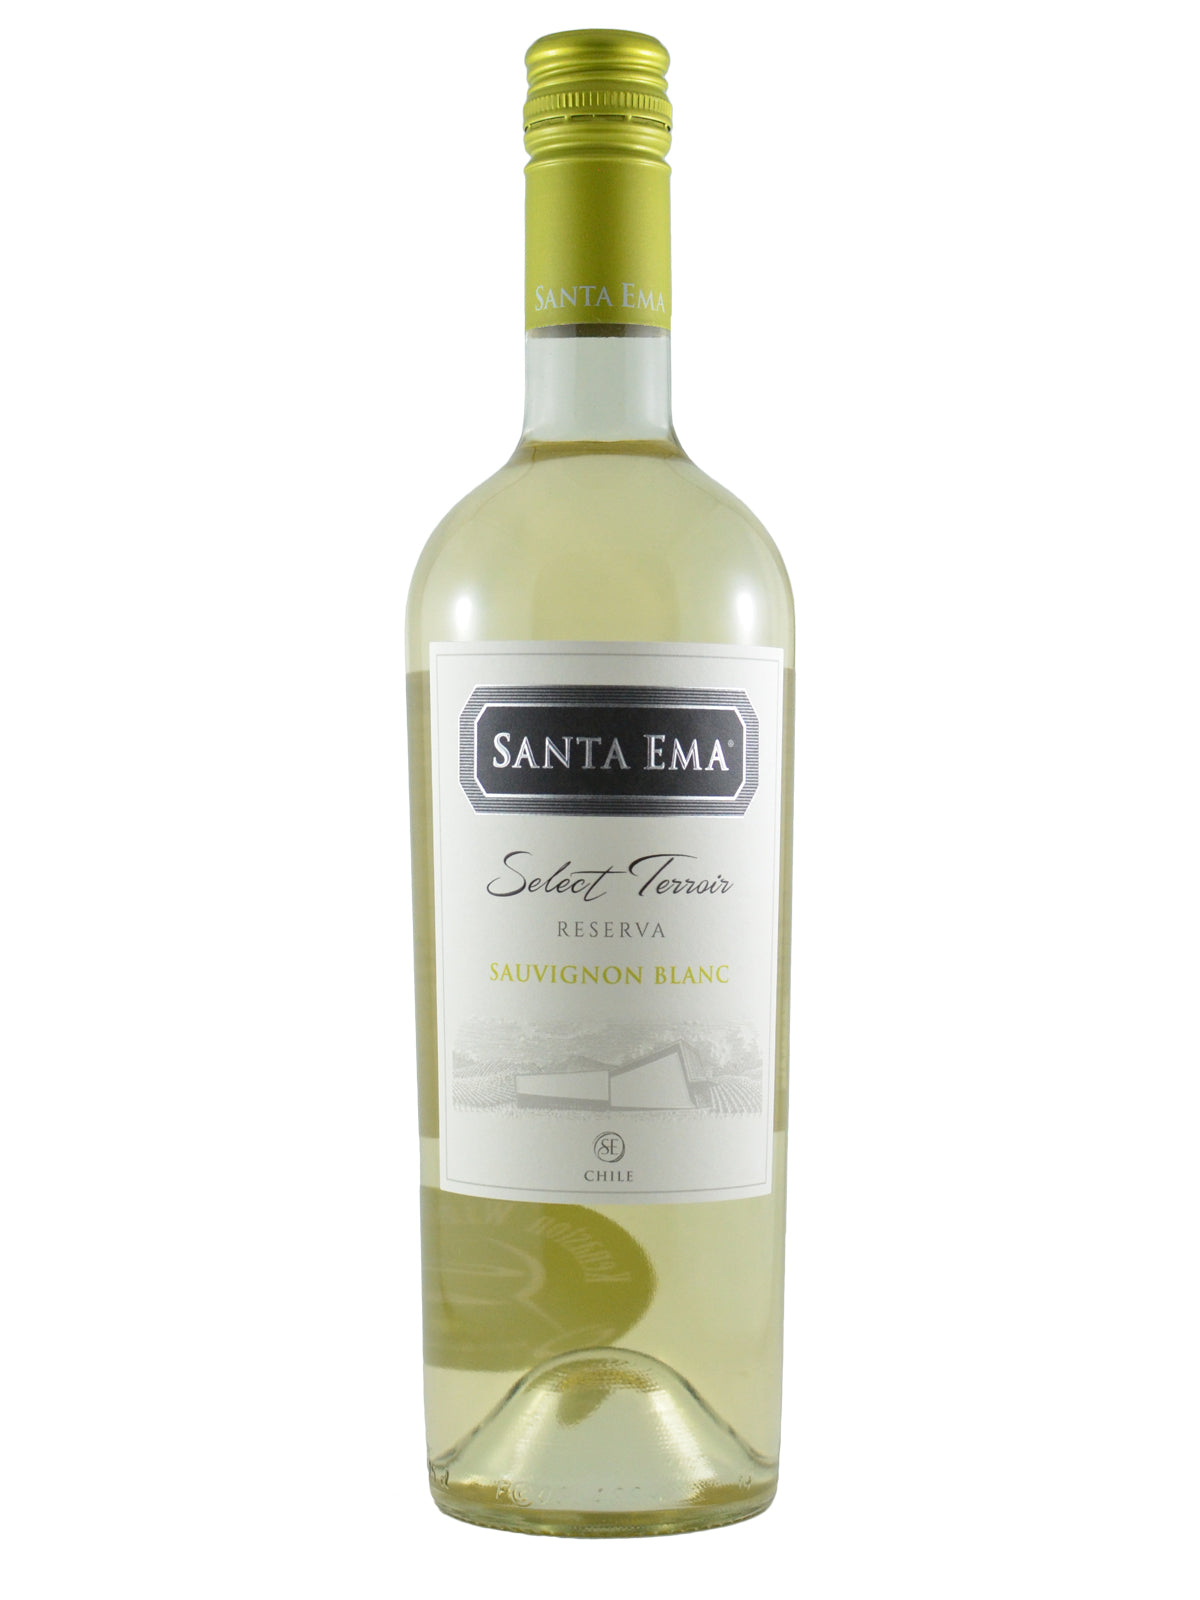 Santa Ema, Select Terroir Sauvignon Blanc